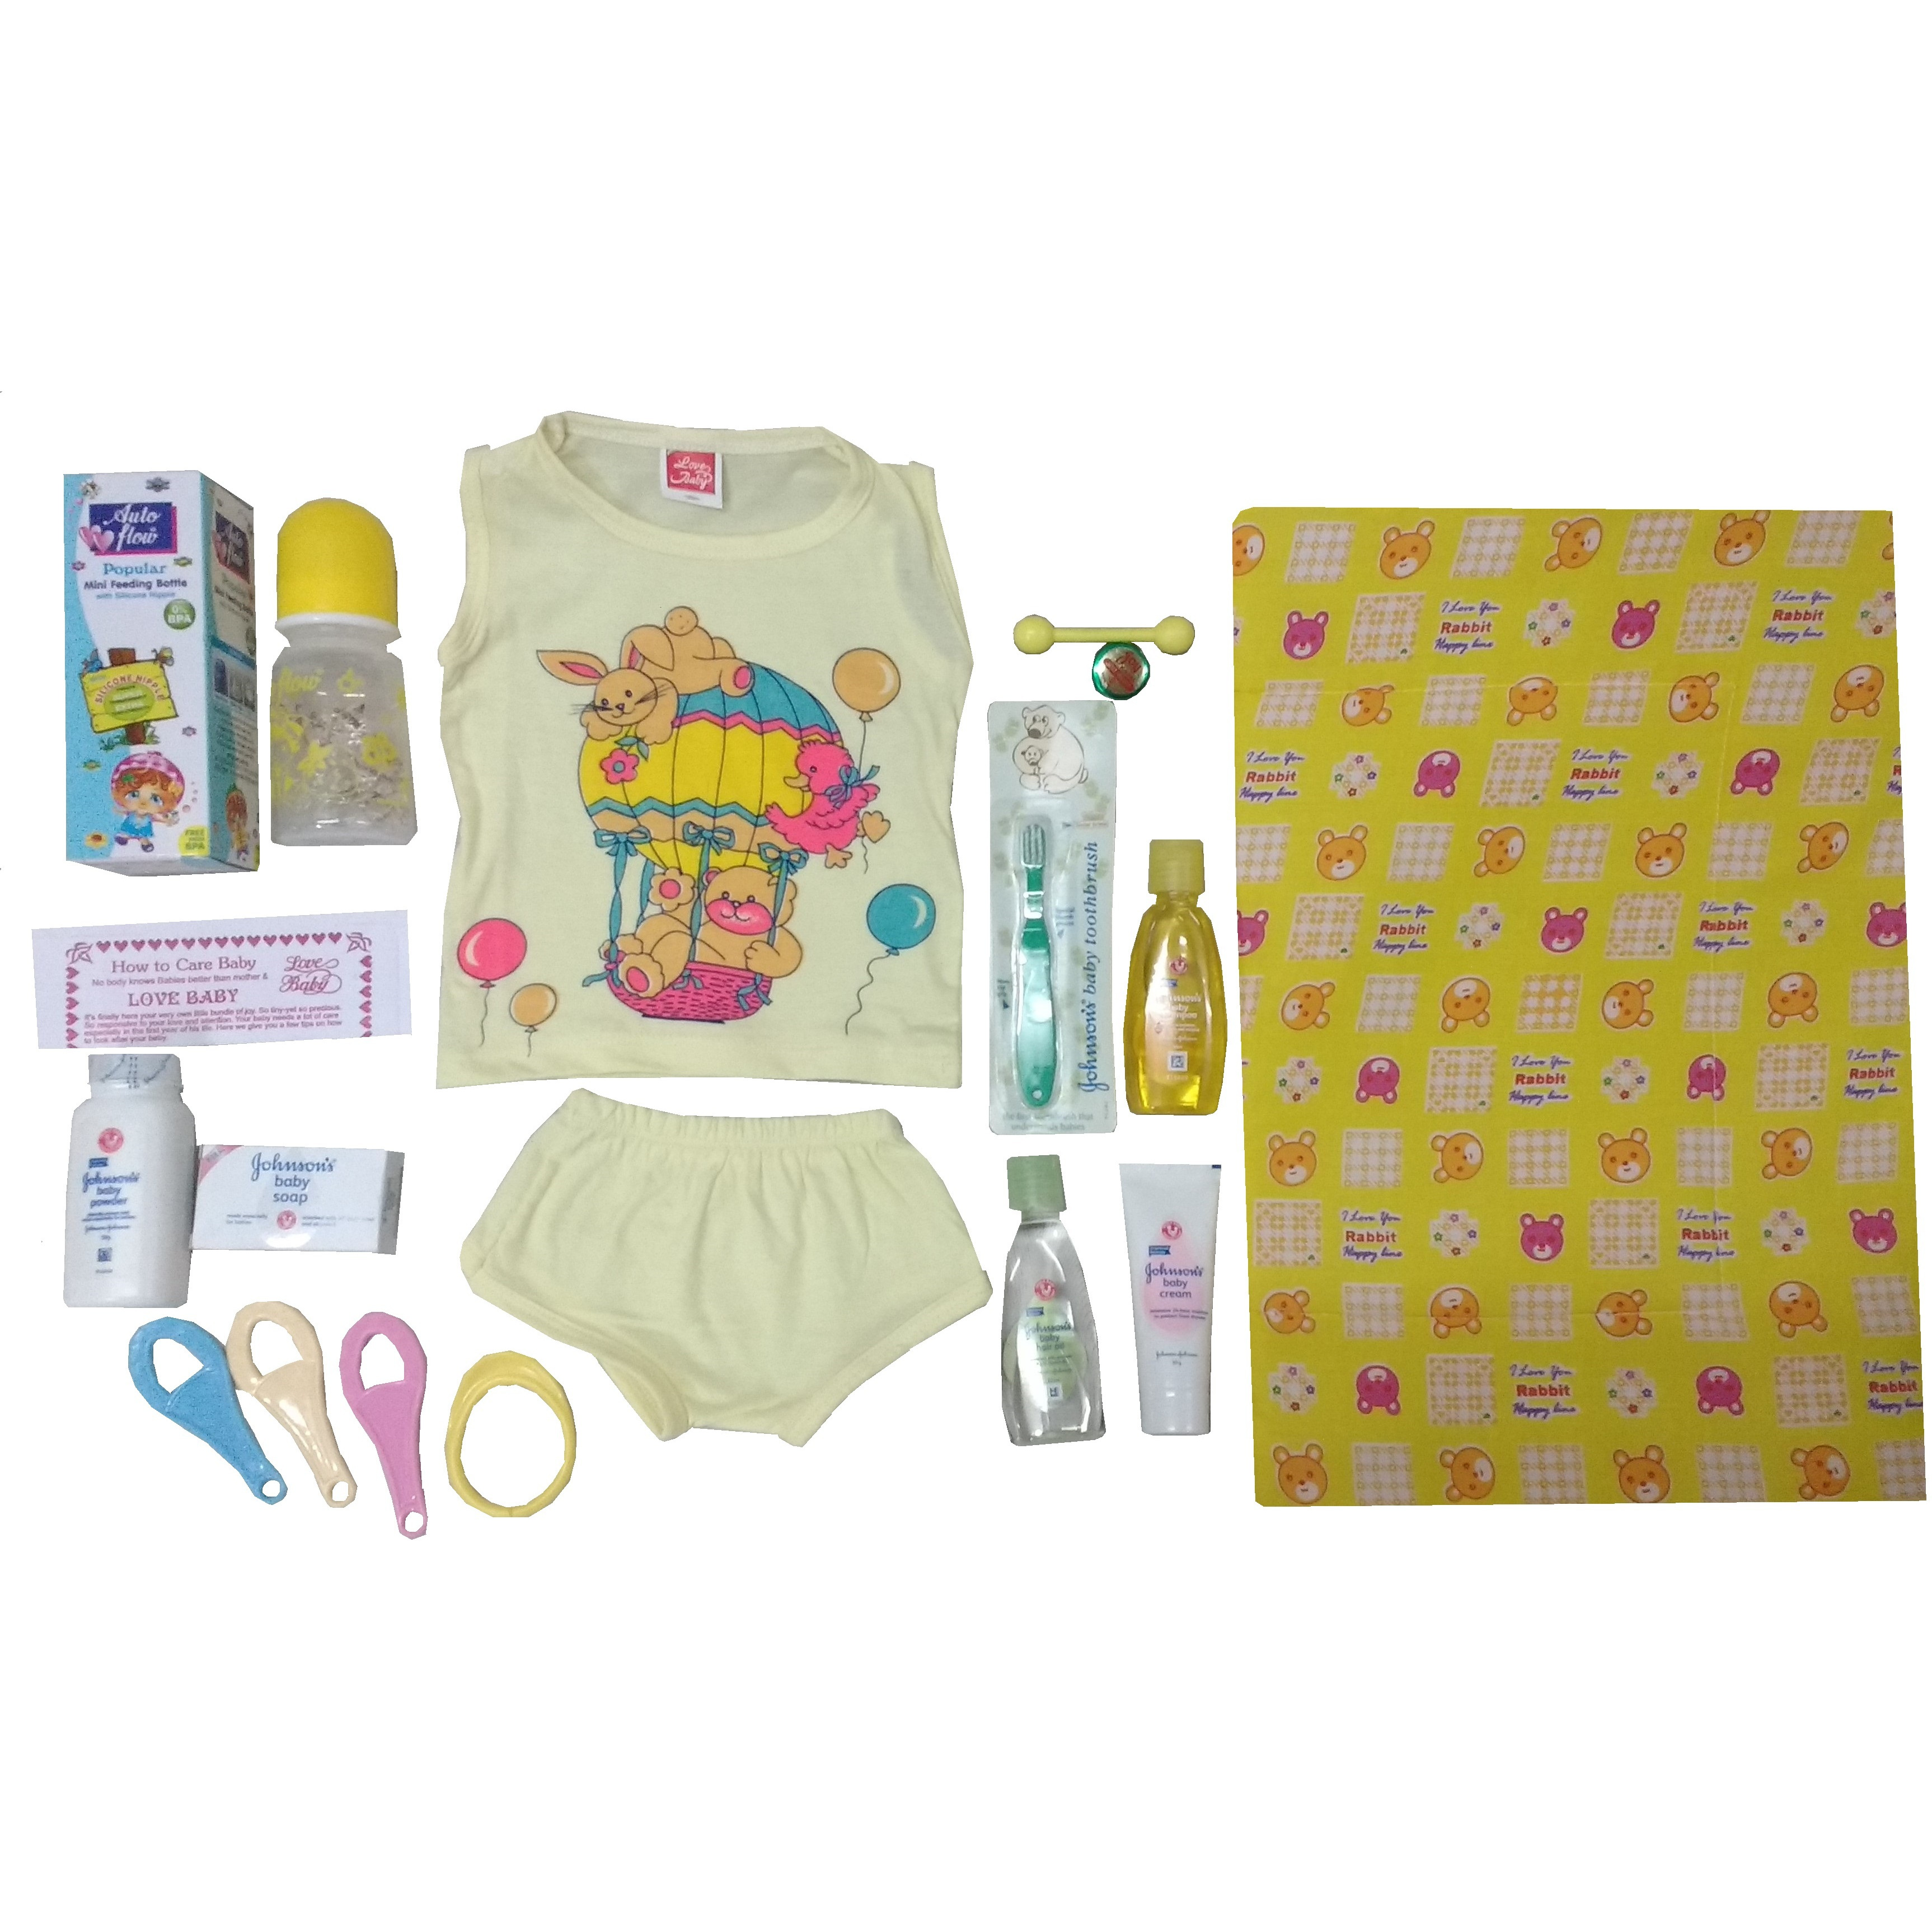 Love Baby Gift Set - Premium Yellow